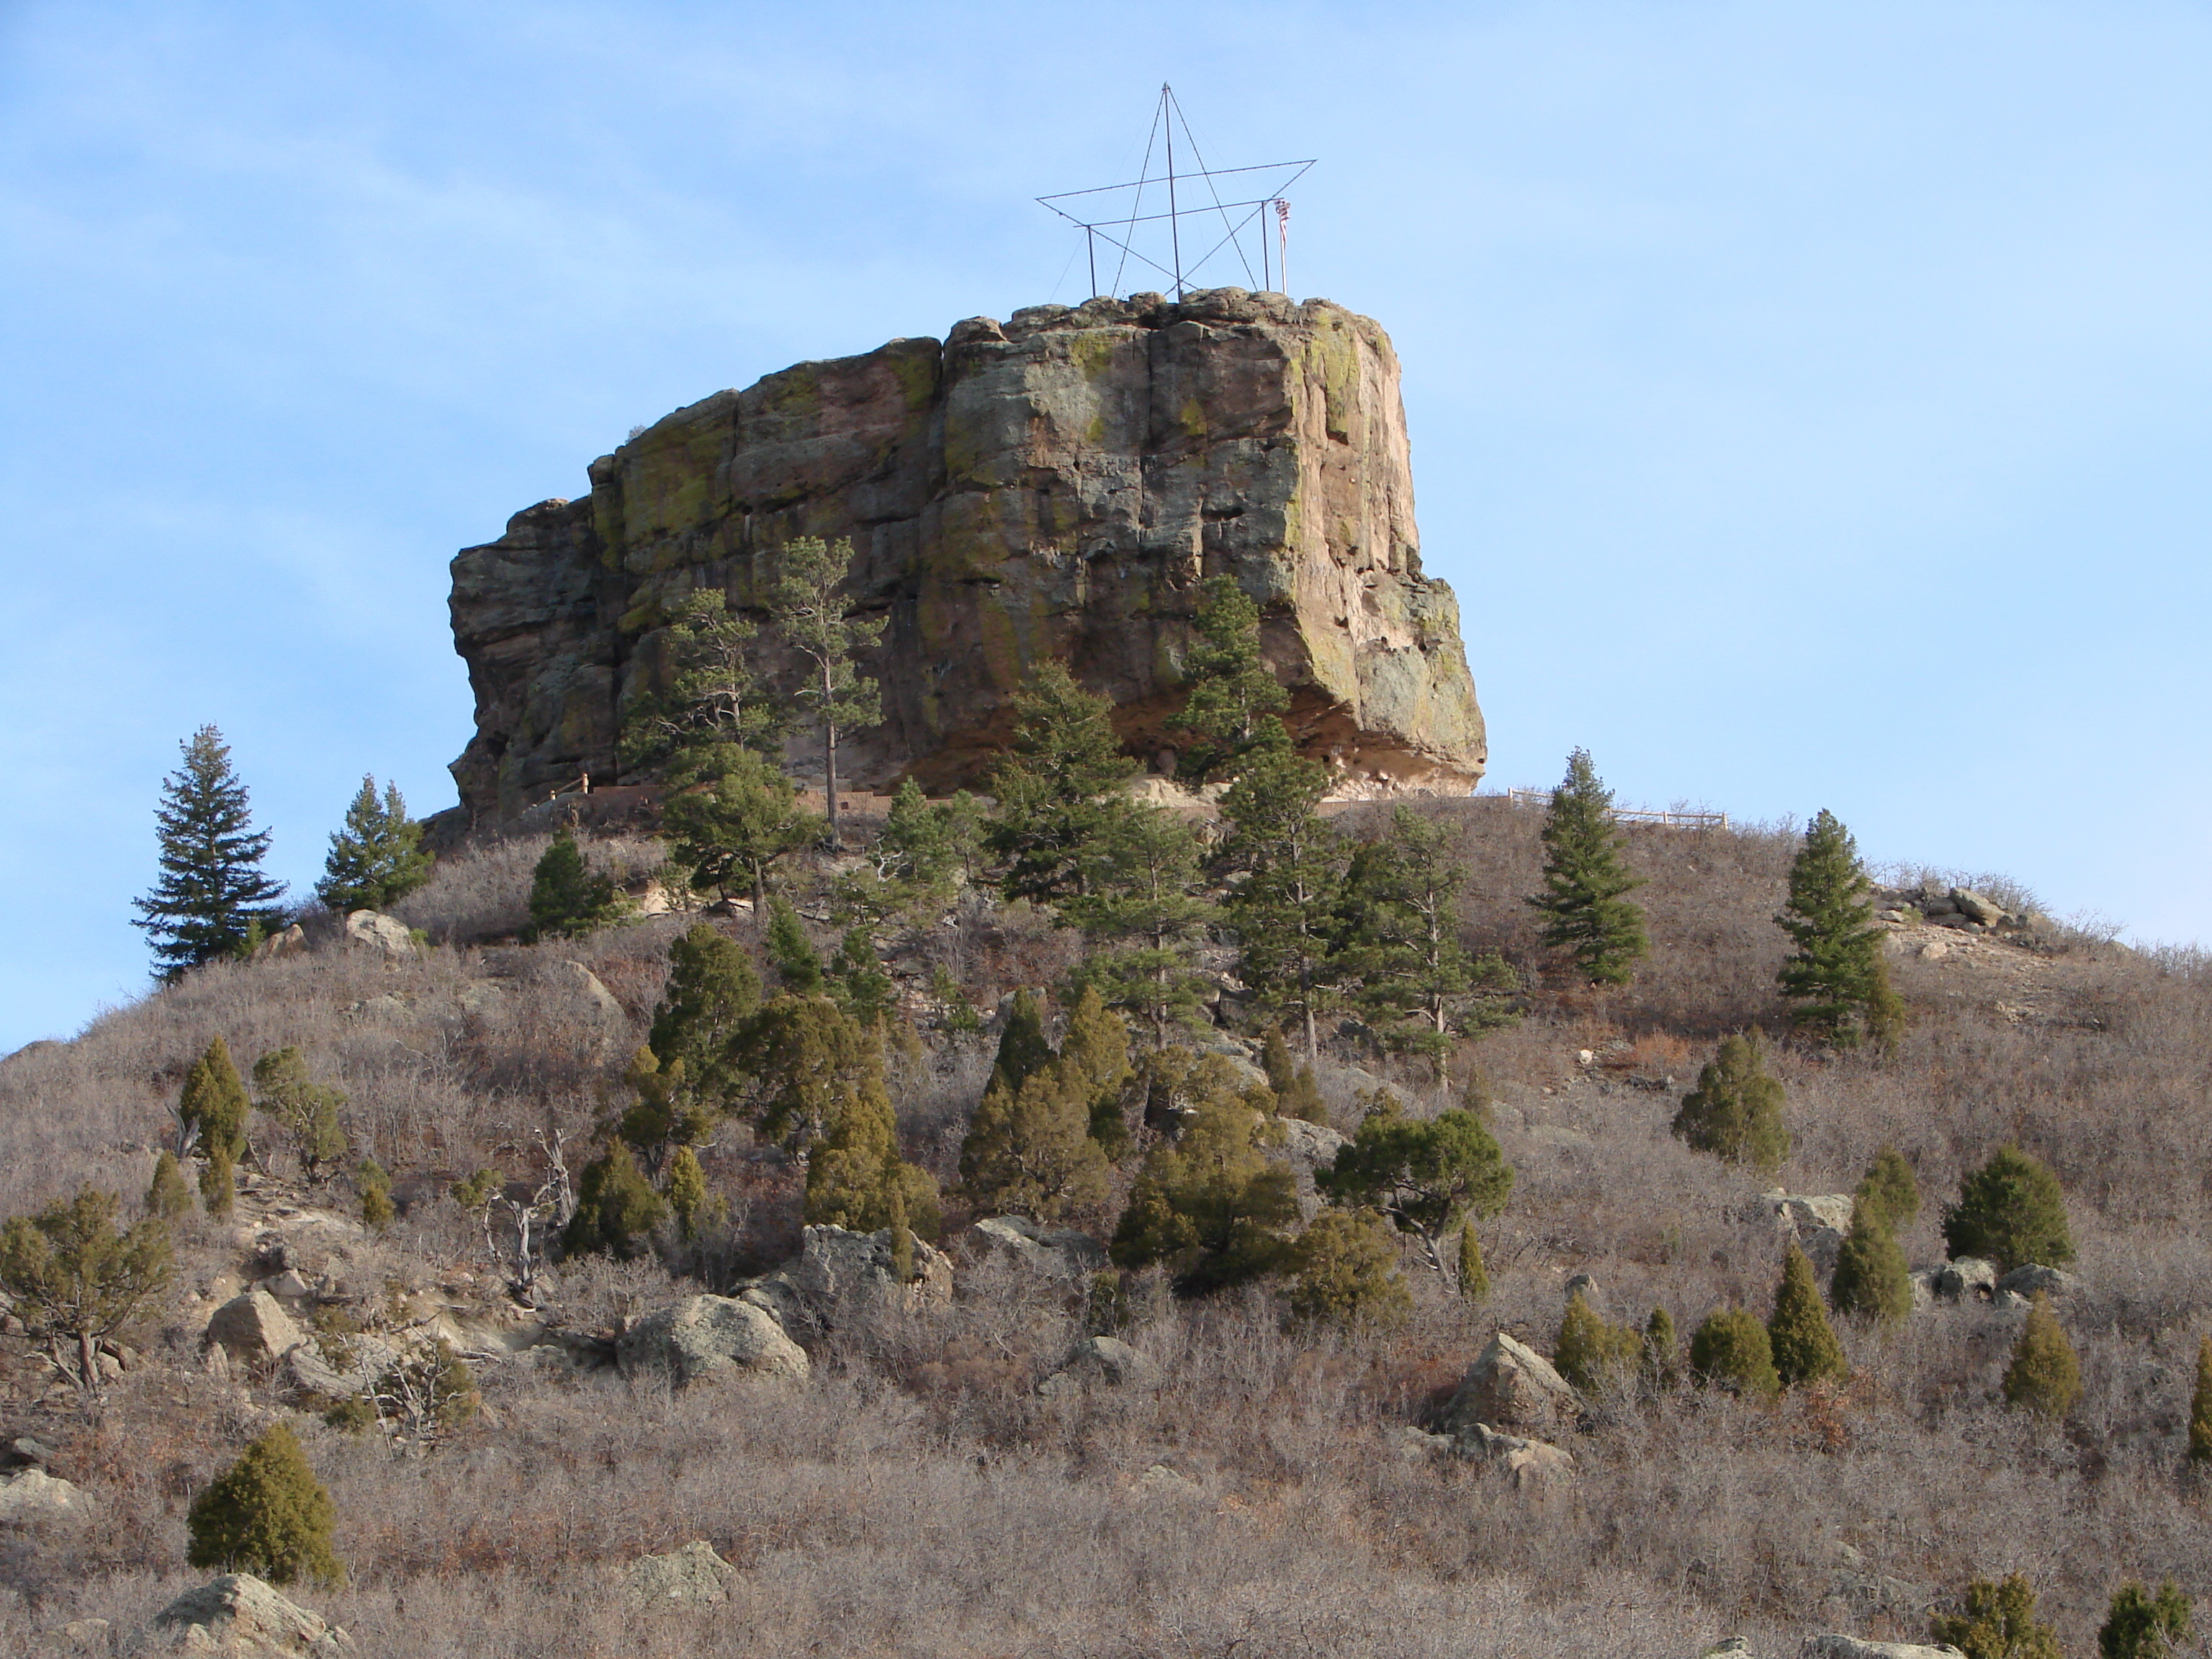 The rock castle photo